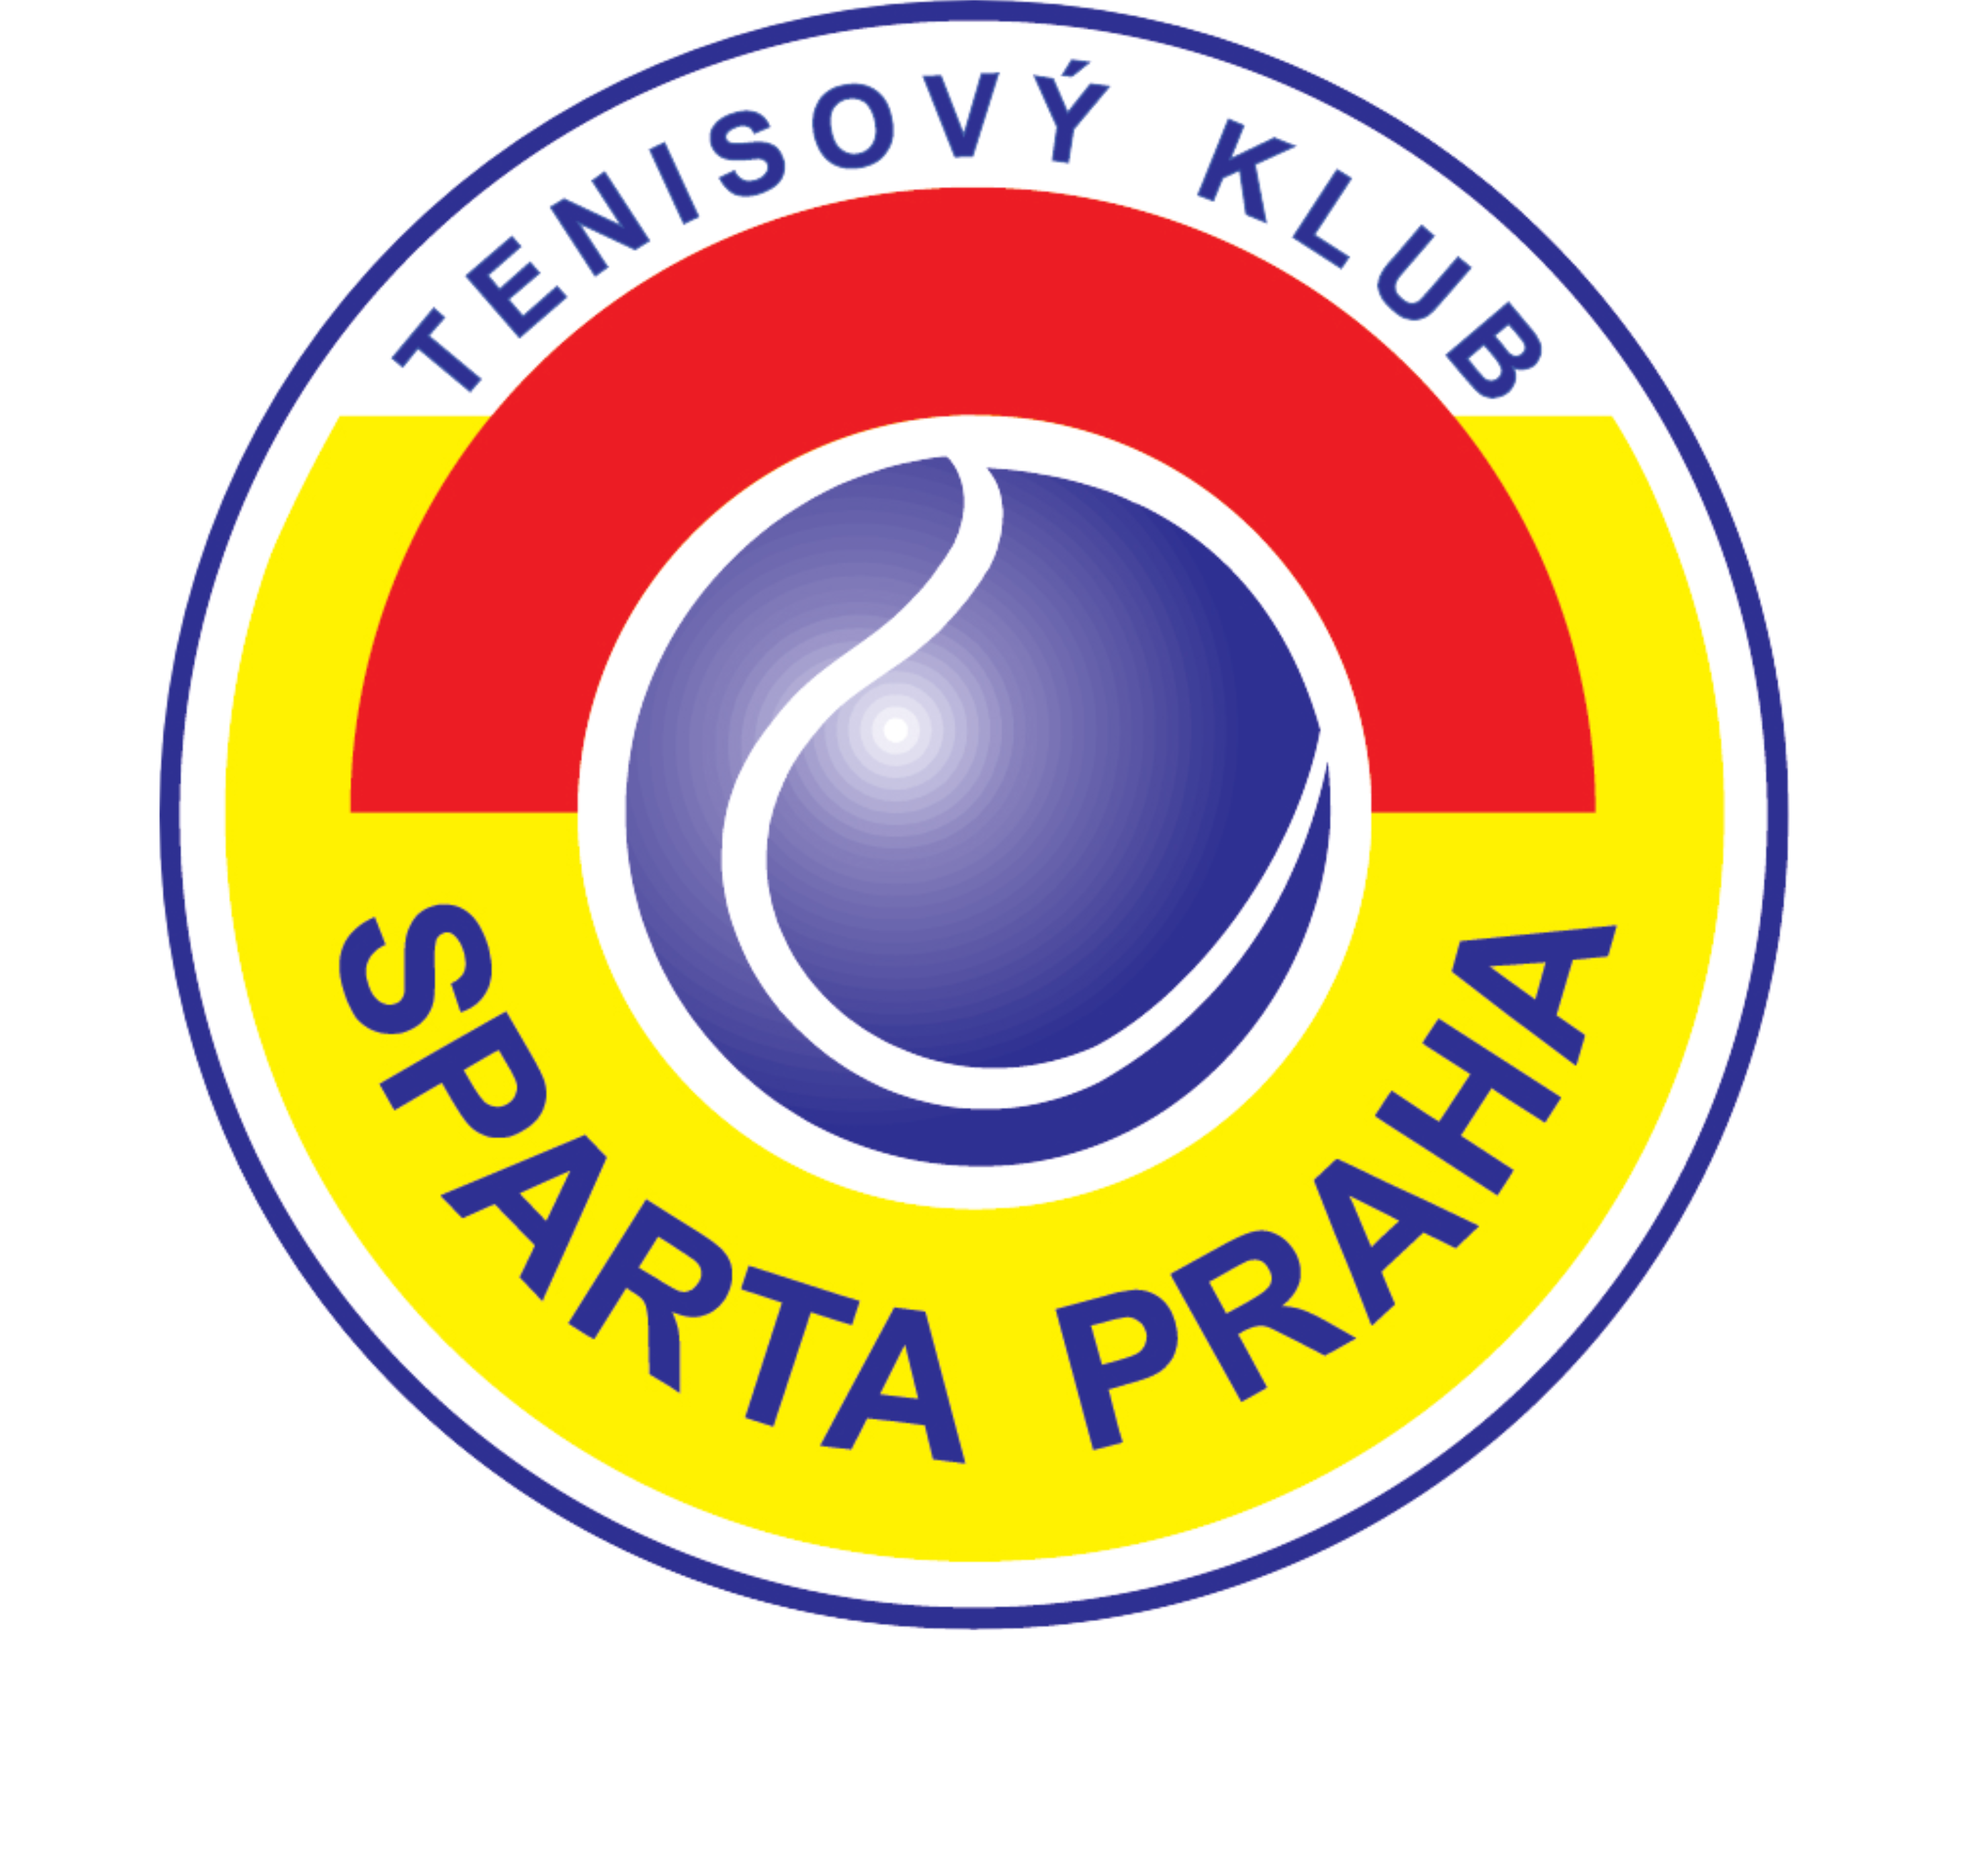 TK Sparta Praha